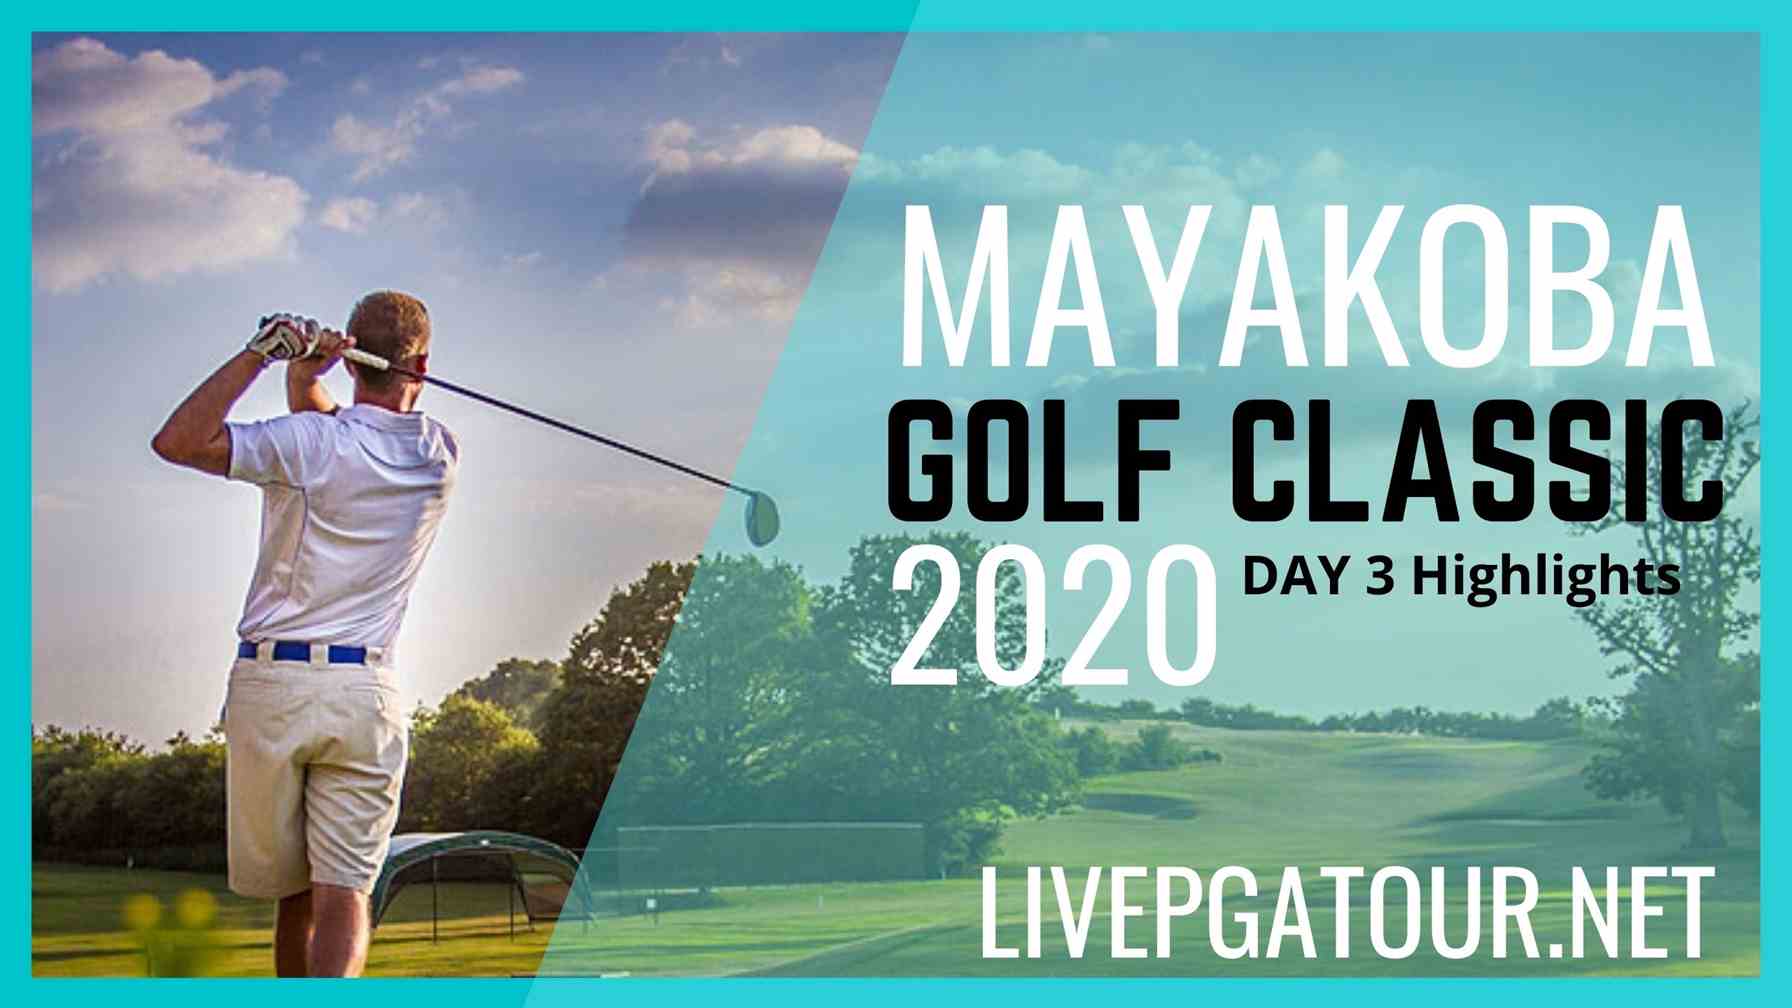 Mayakoba Golf Classic PGA Tour Day 3 Highlights 2020